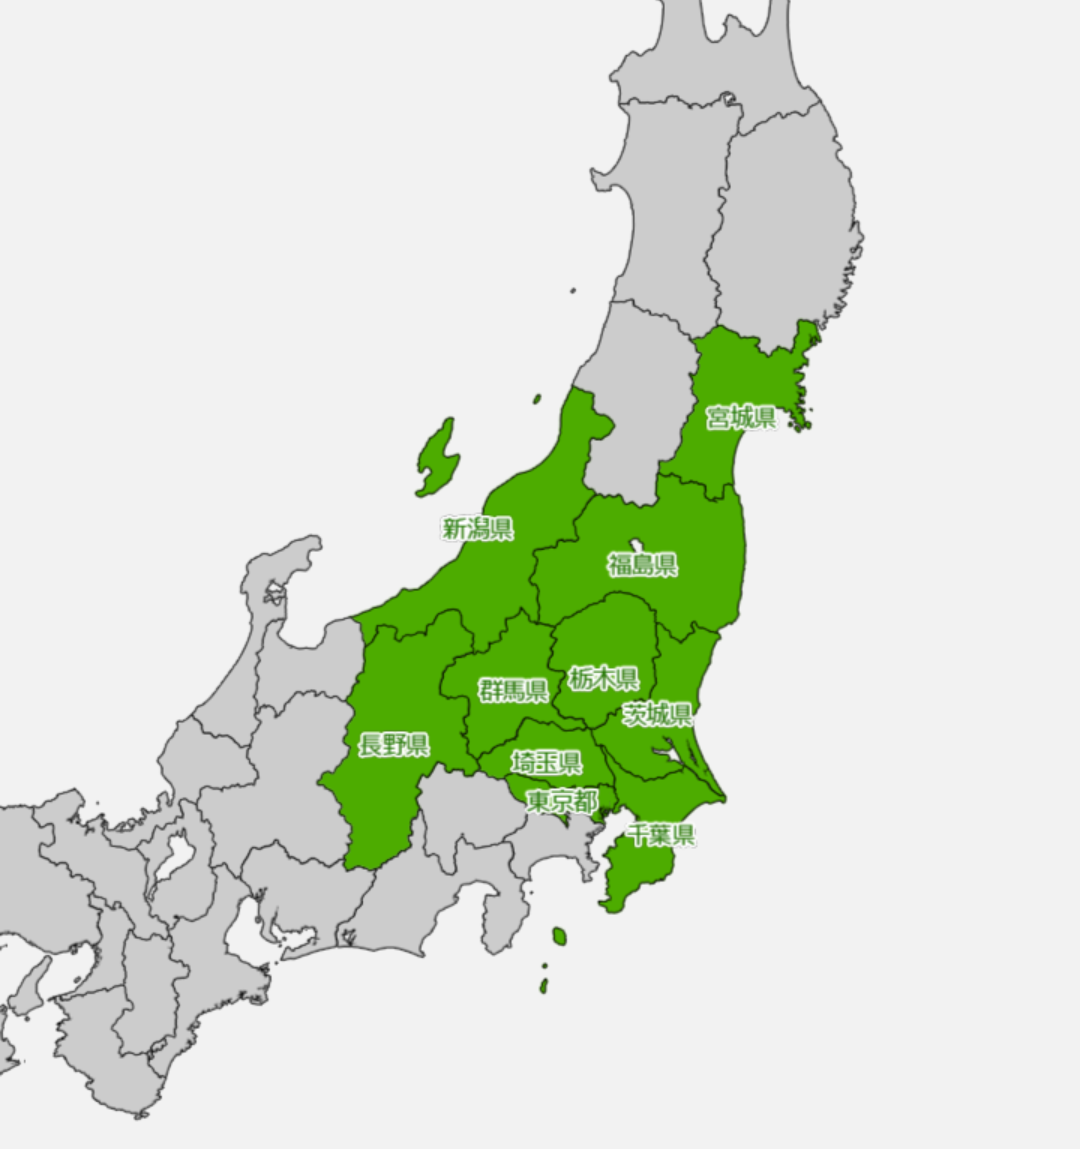 日本核电站地图图片